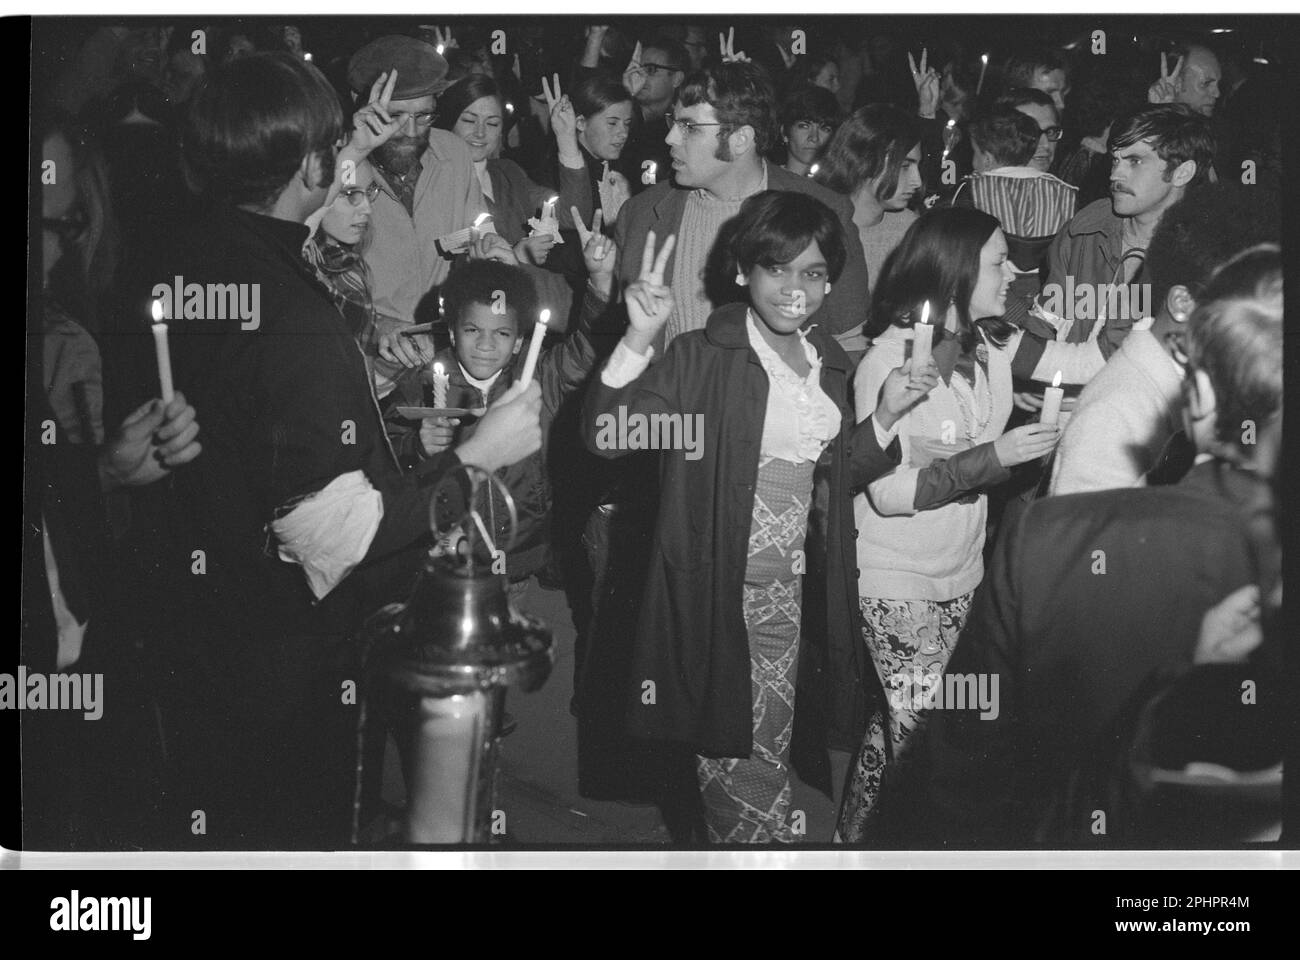 Une foule de gens qui font des signes de paix et qui tiennent des bougies, y compris des Afro-Américains, lors d'une marche nocturne à la Maison Blanche, menée par Coretta Scott King dans le cadre du moratoire visant à mettre fin à la guerre au Vietnam, Washington, DC, 15 octobre 1969. Photo de Warren K Leffler/US News et World Report Magazine Collection) Banque D'Images